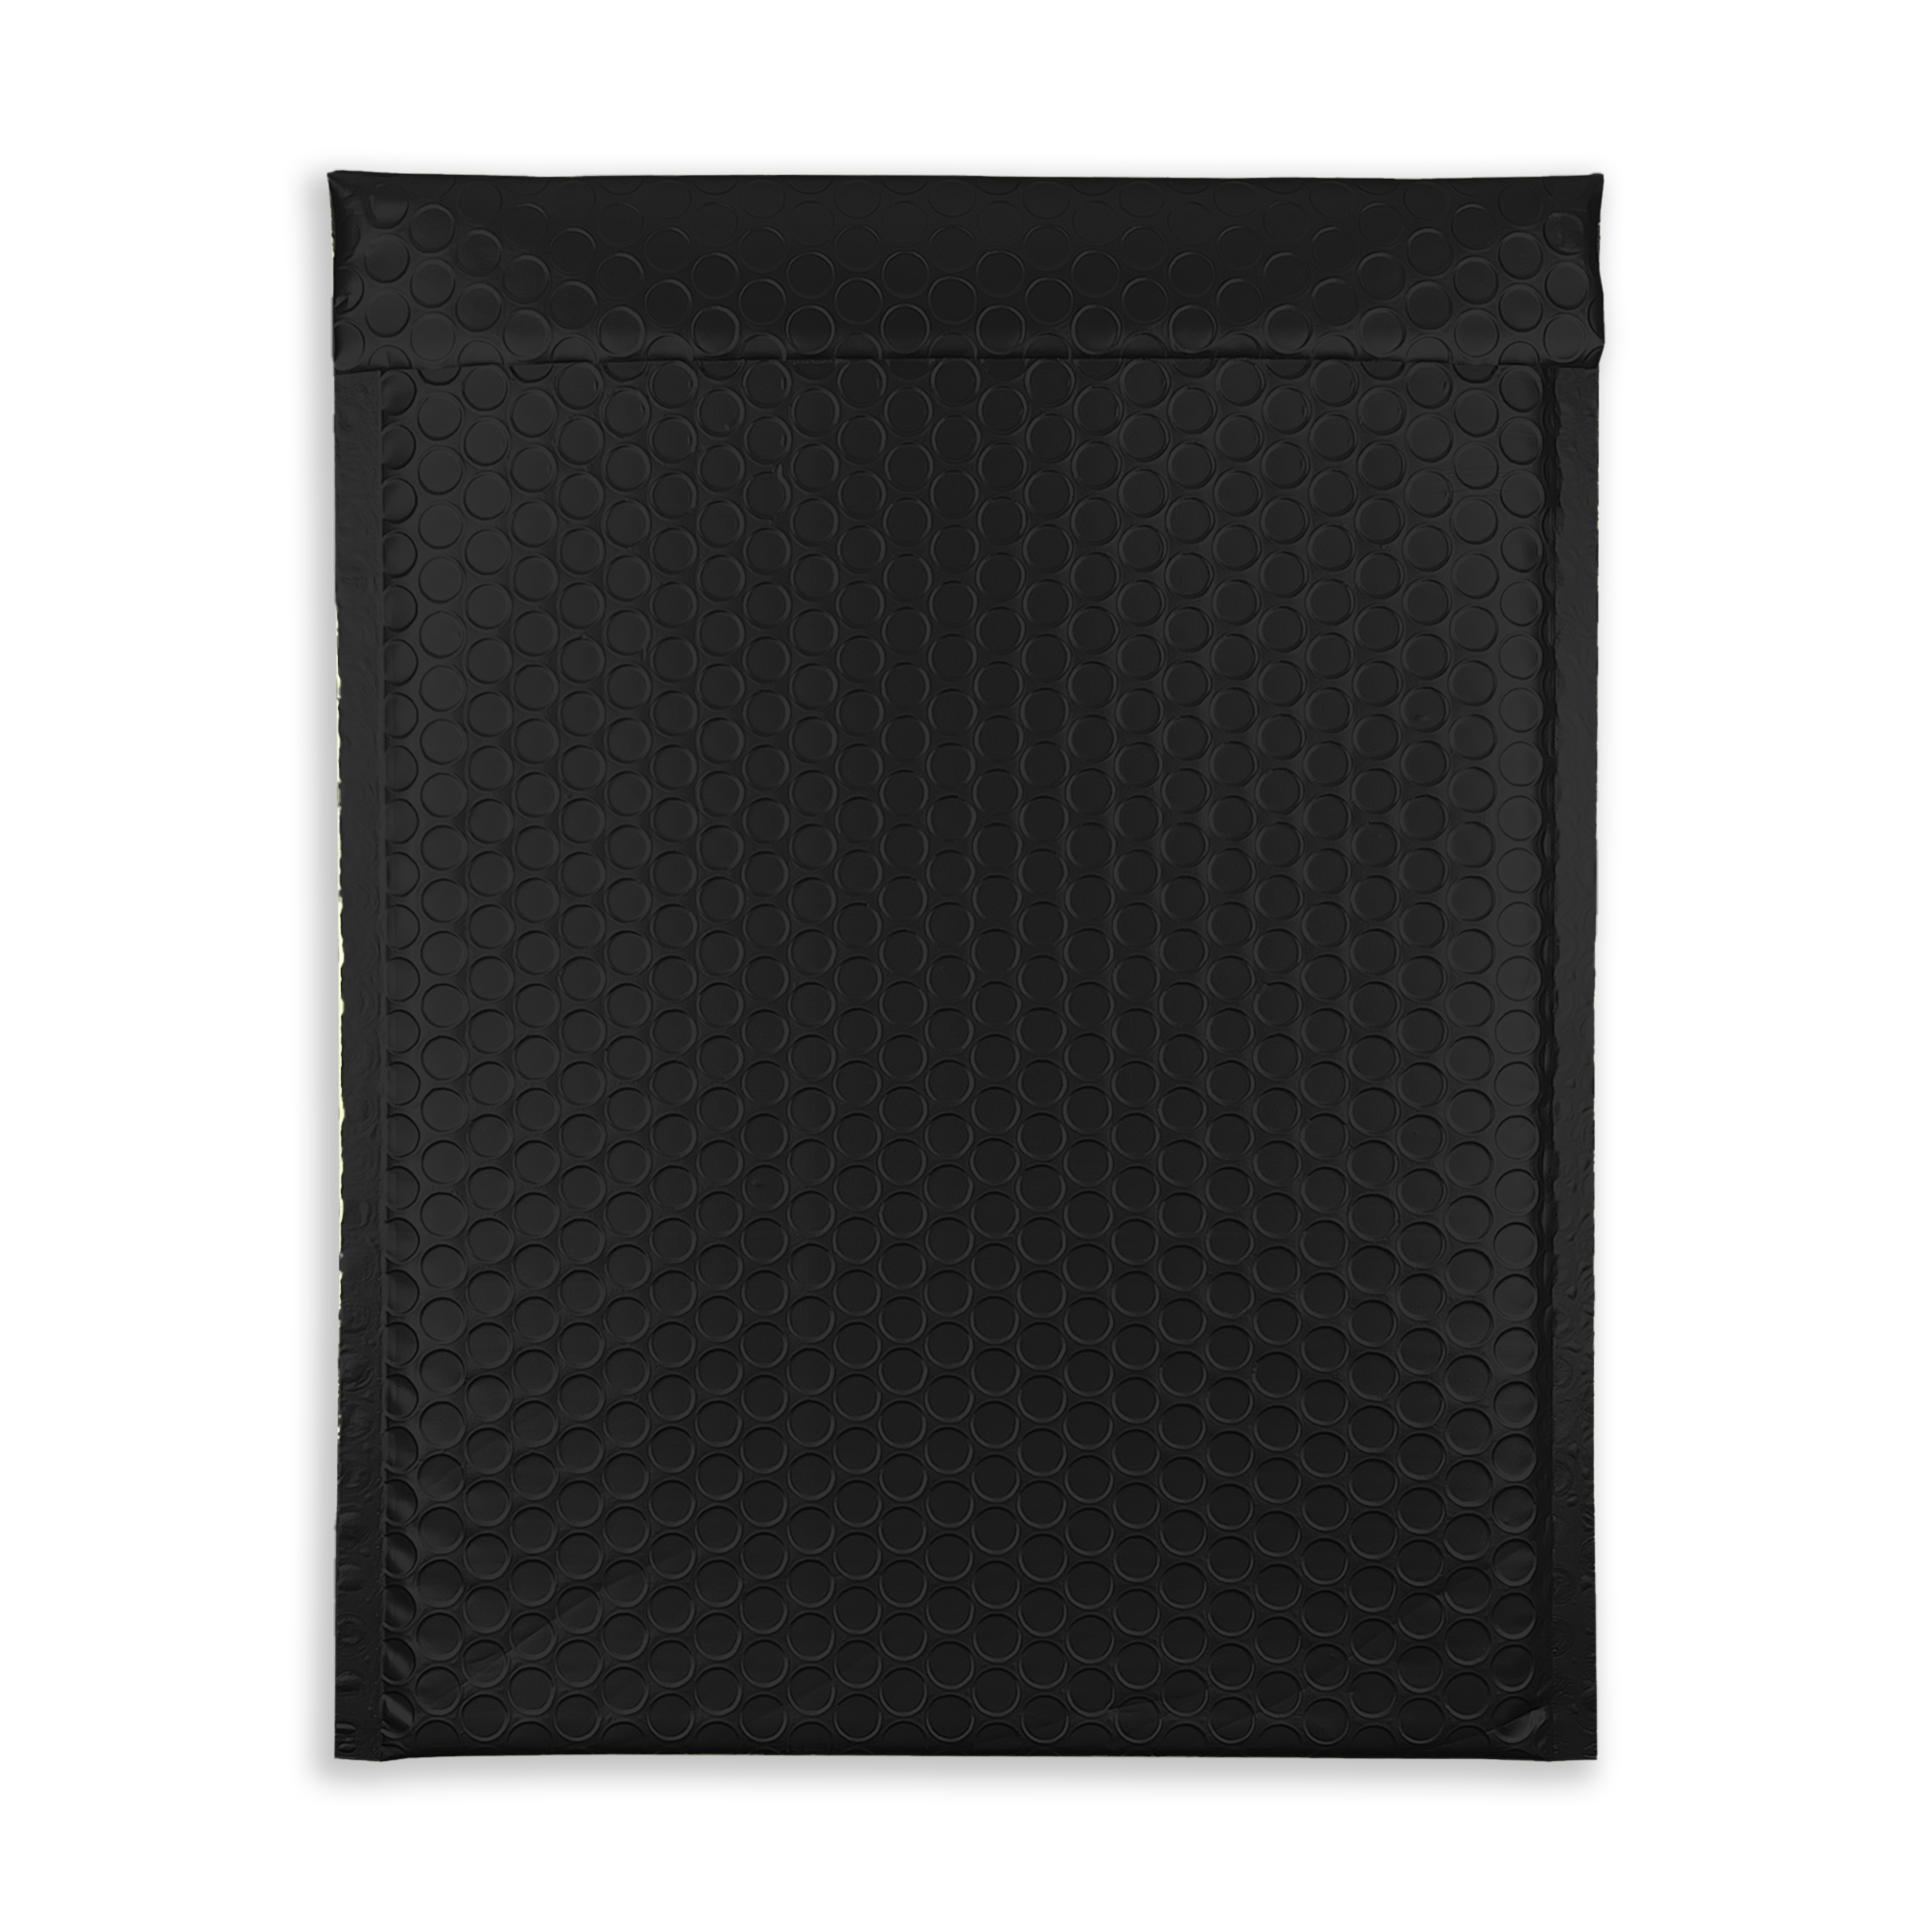 jet-black-bubble-padded-envelopes-matt-rectangle-flap-closed